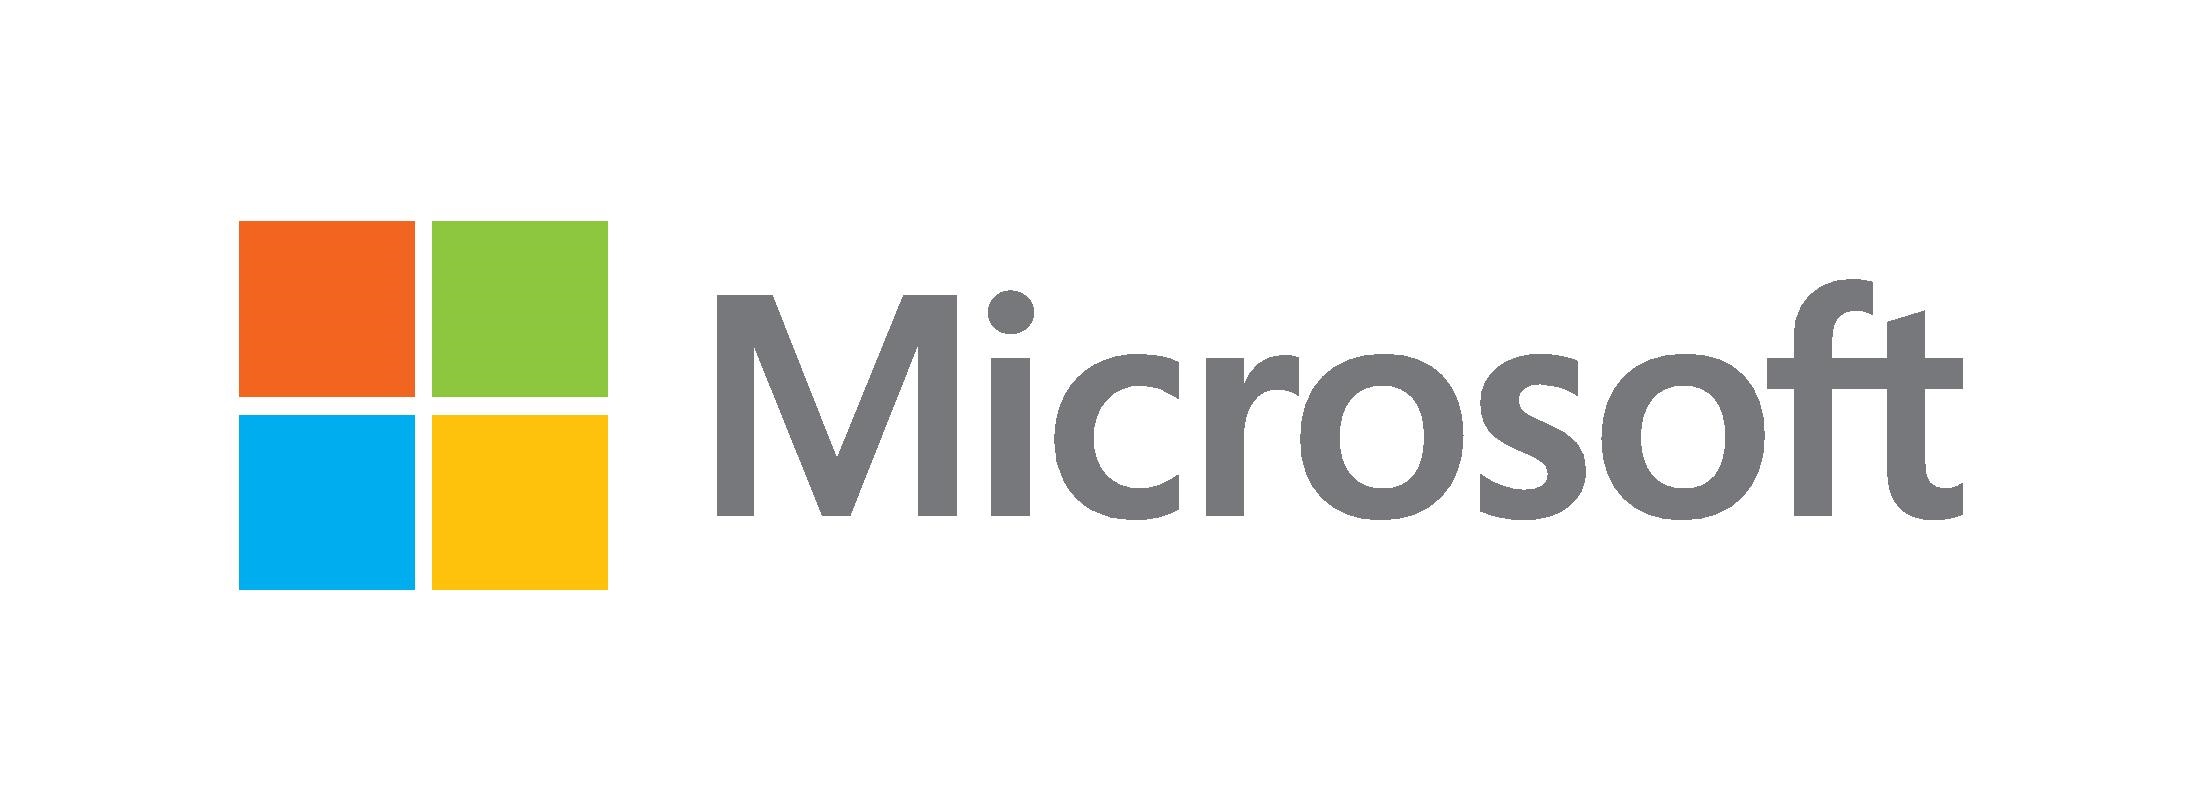 Microsoft: spadł zysk mimo większych przychodów